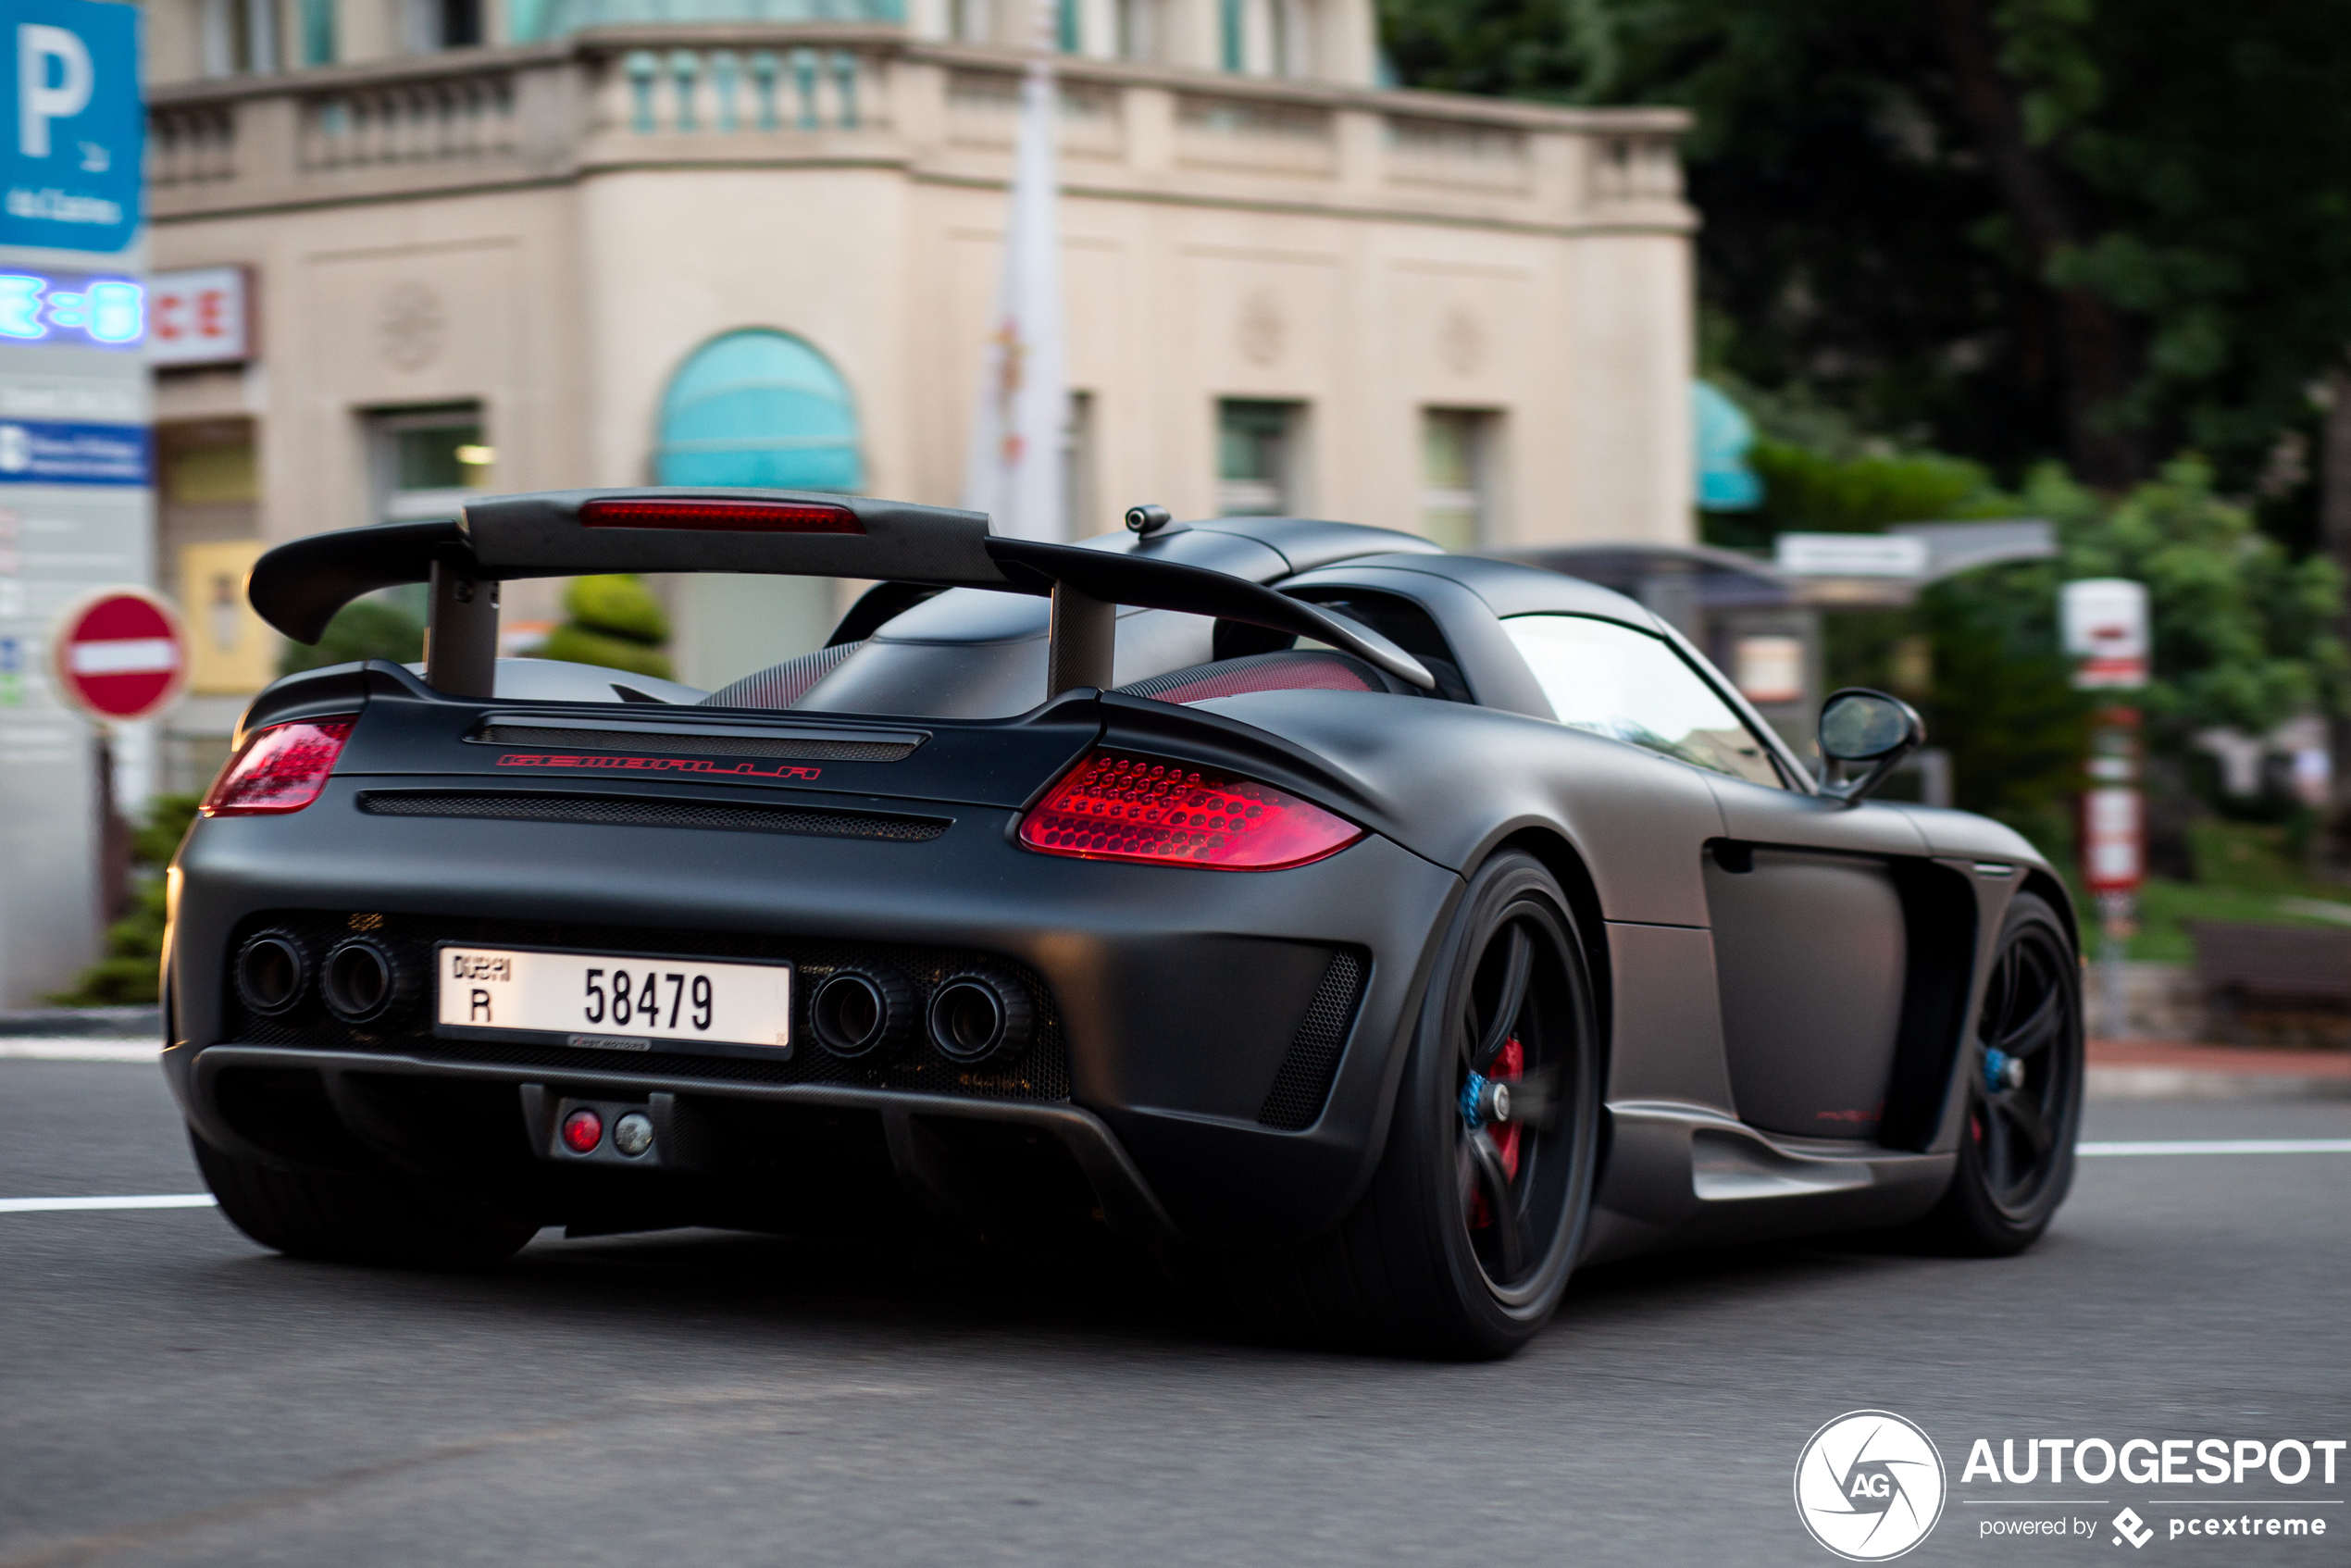 Feest! Monaco levert weer topspots met deze Gemballa Mirage GT Black Edition